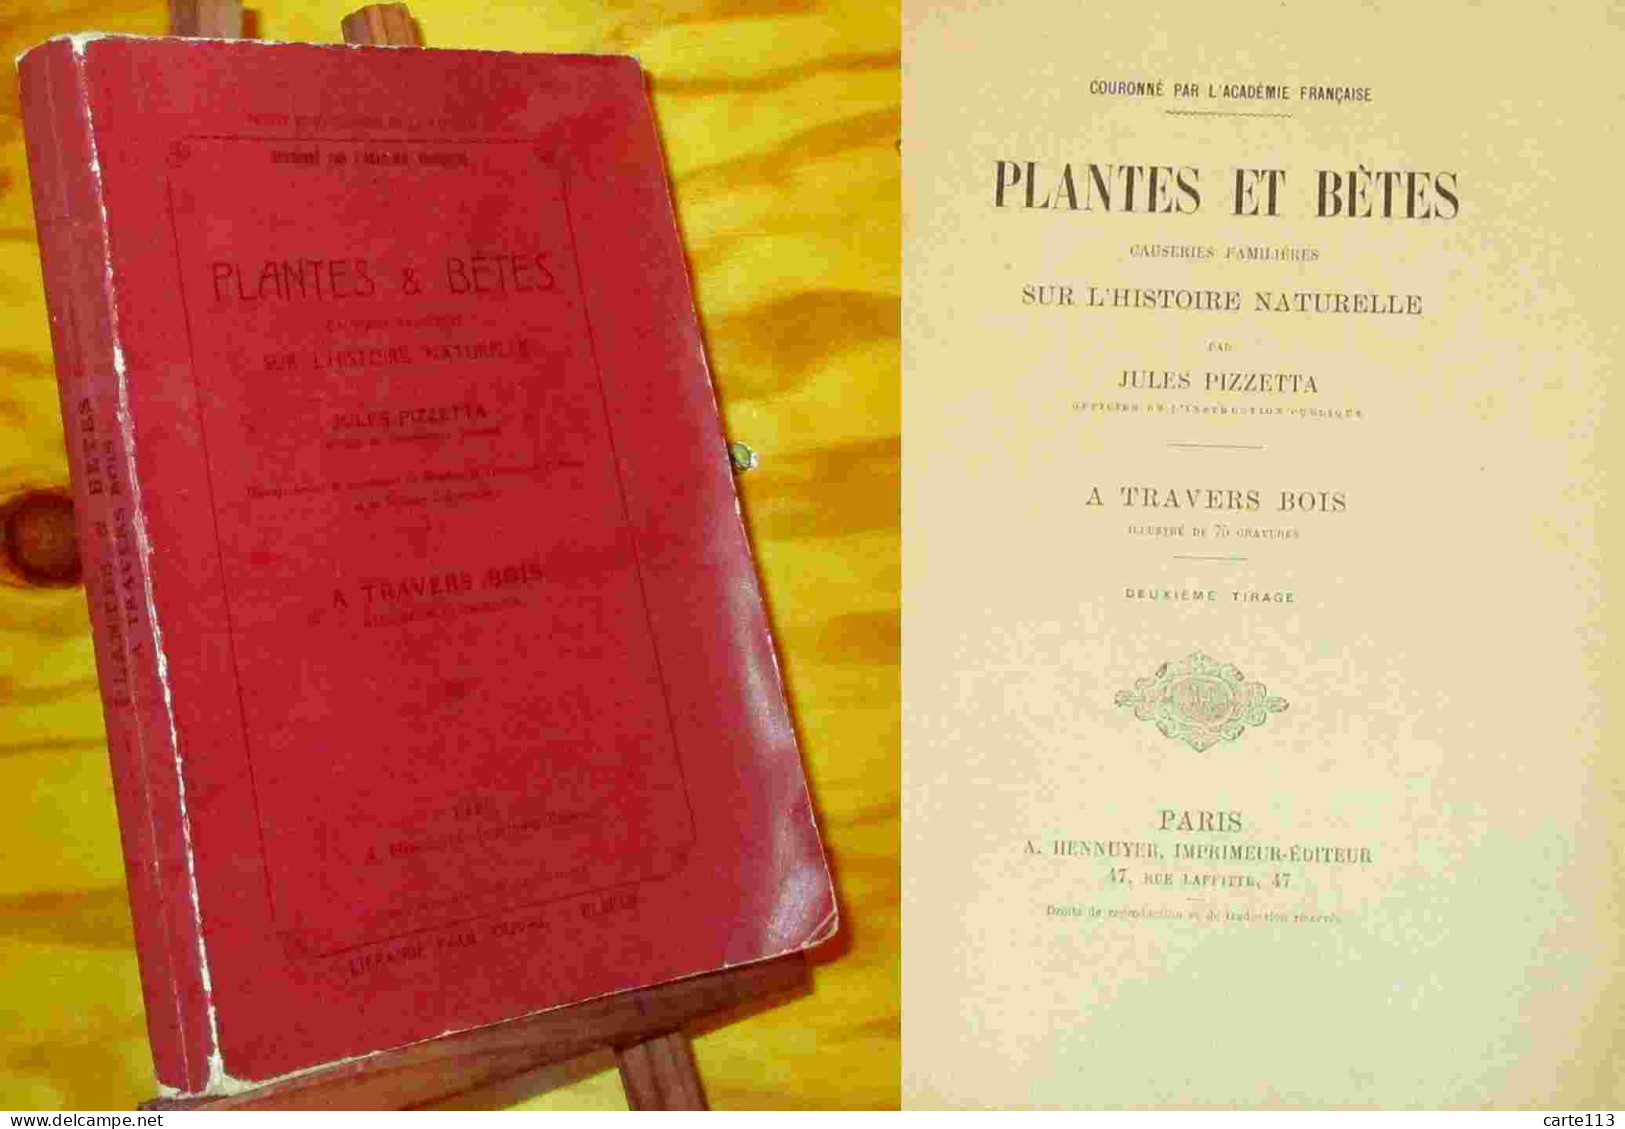 PIZZETTA  Jules - PLANTES ET BETES - CAUSERIES FAMILIERES SUR L'HISTOIRE NATURELLE - A - 1801-1900